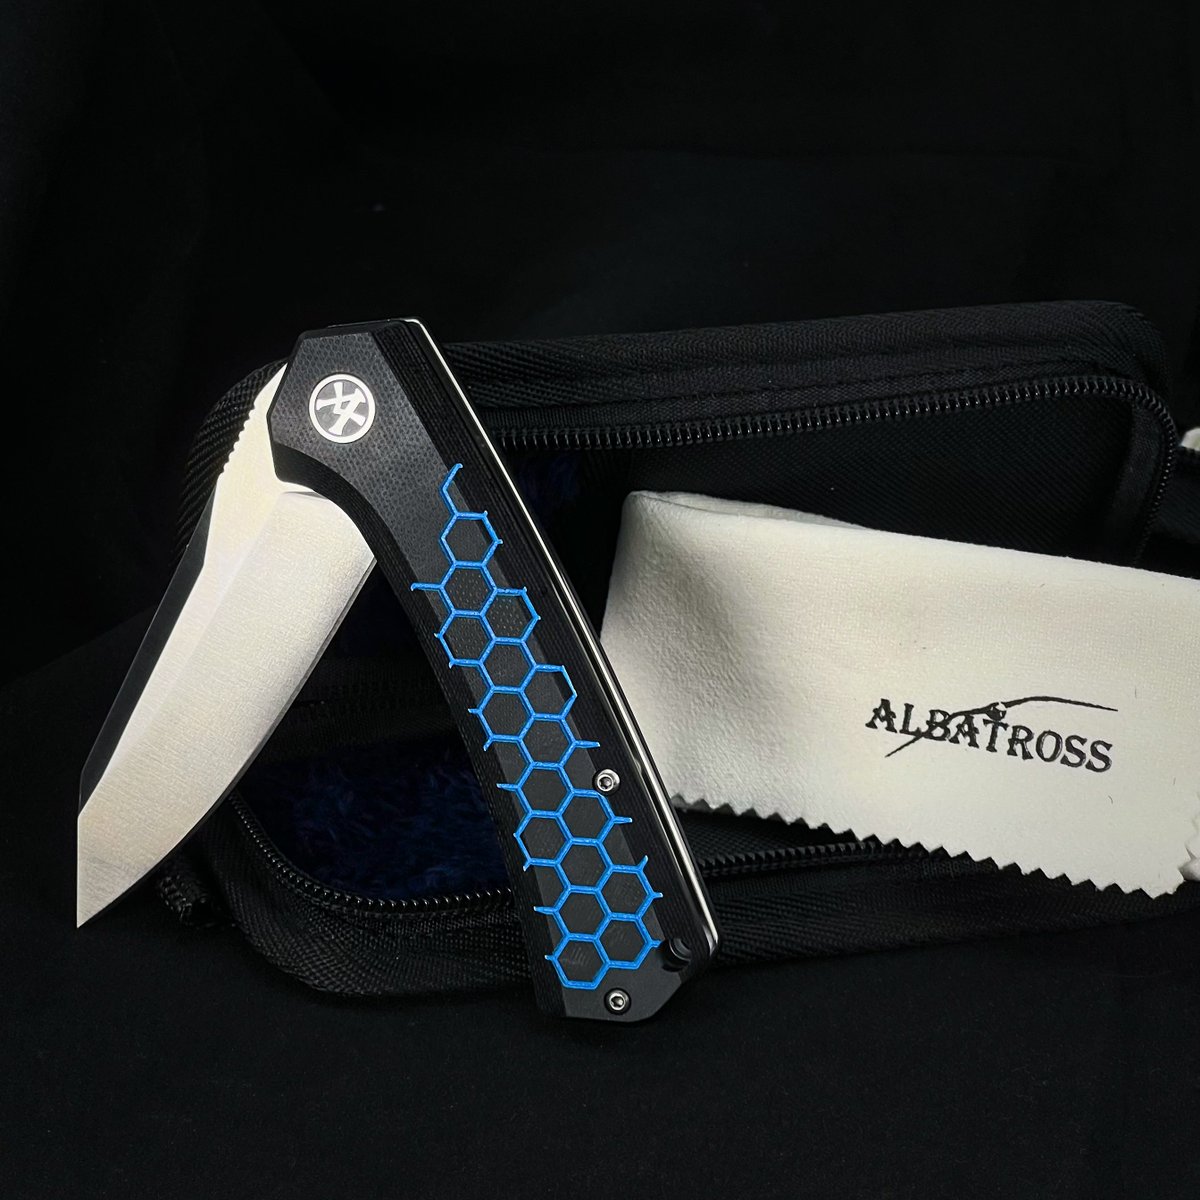 New Series.
ALBATROSS FK055-BLUE.
·
·
·
#ALBATROSSknife #ALBATROSSknives #knife #knives
#edcknives #edc #foldingknife #pocketknife #knifepics
#knifestagram #KnifeLife #knifecollection #sharpknife
#StainlessSteel #StainlessSteelKnife #gift #GiftIdeas
#edcGear #collectibles